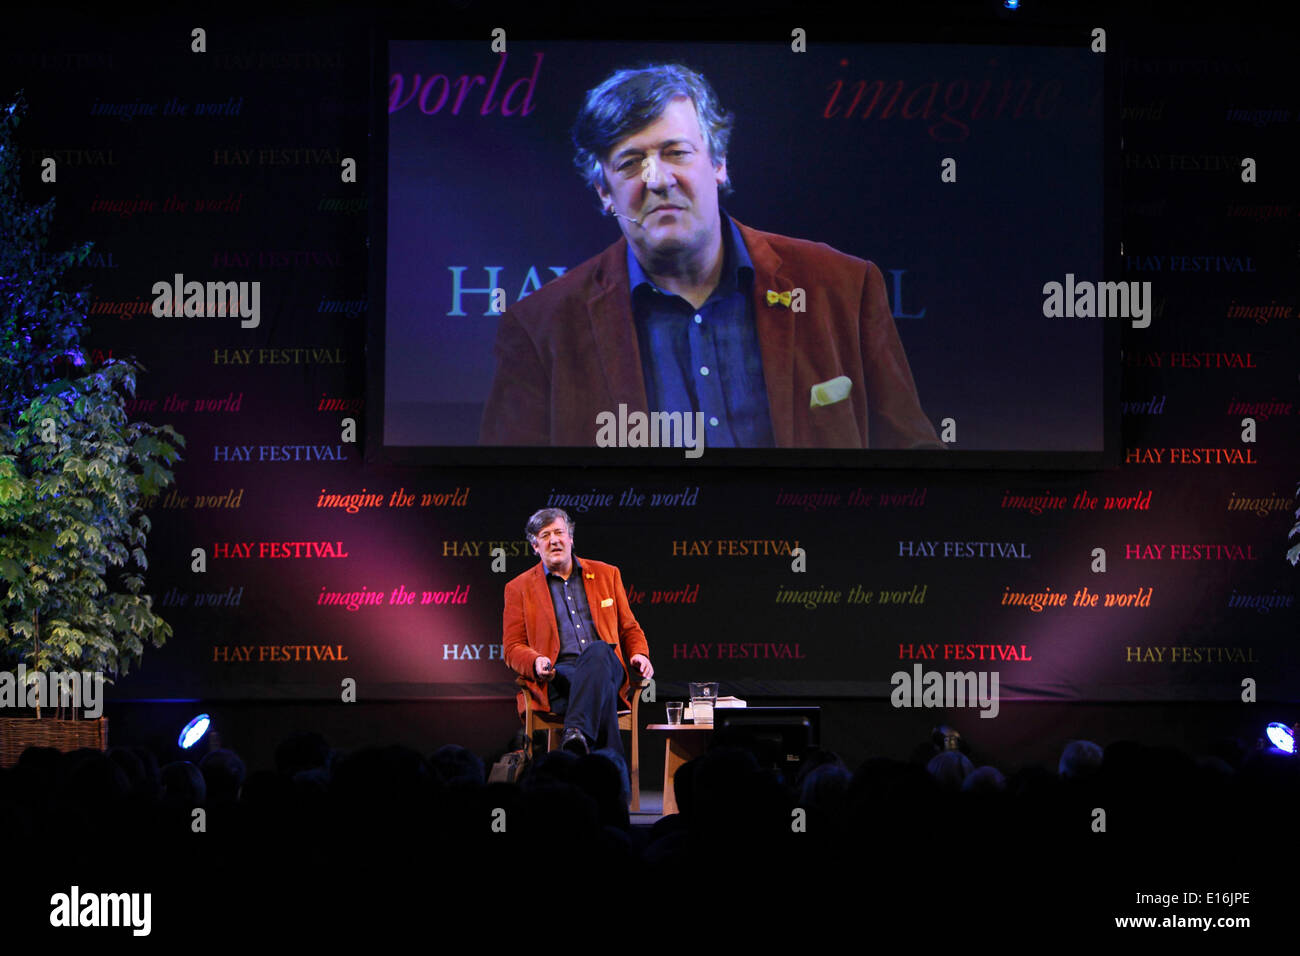 Hay-on-Wye, au Pays de Galles, Royaume-Uni 24 Mai 2014 Stephen Fry parlant au troisième jour des 2014 Hay Festival, le Pays de Galles UK Crédit : Zute Lightfoot/Alamy Live News Banque D'Images